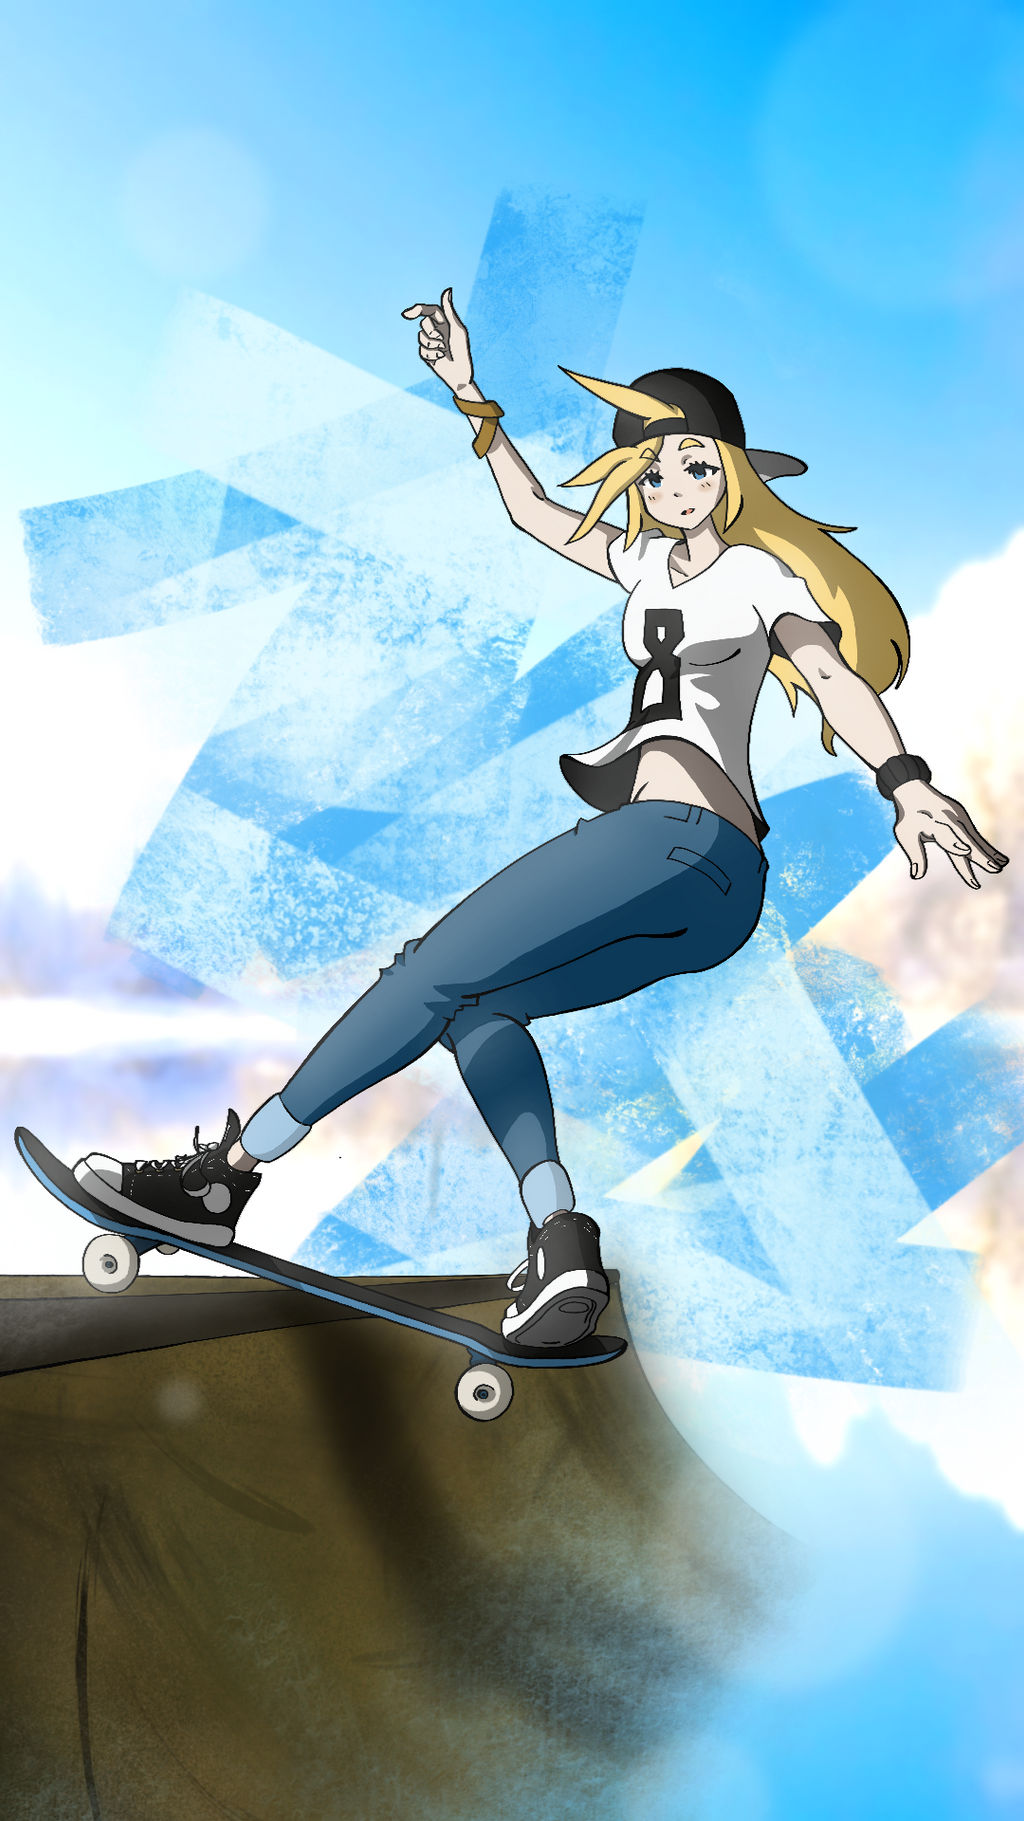 Anime Skater Girl - K8 Grinding by nightmarerises2007 on DeviantArt